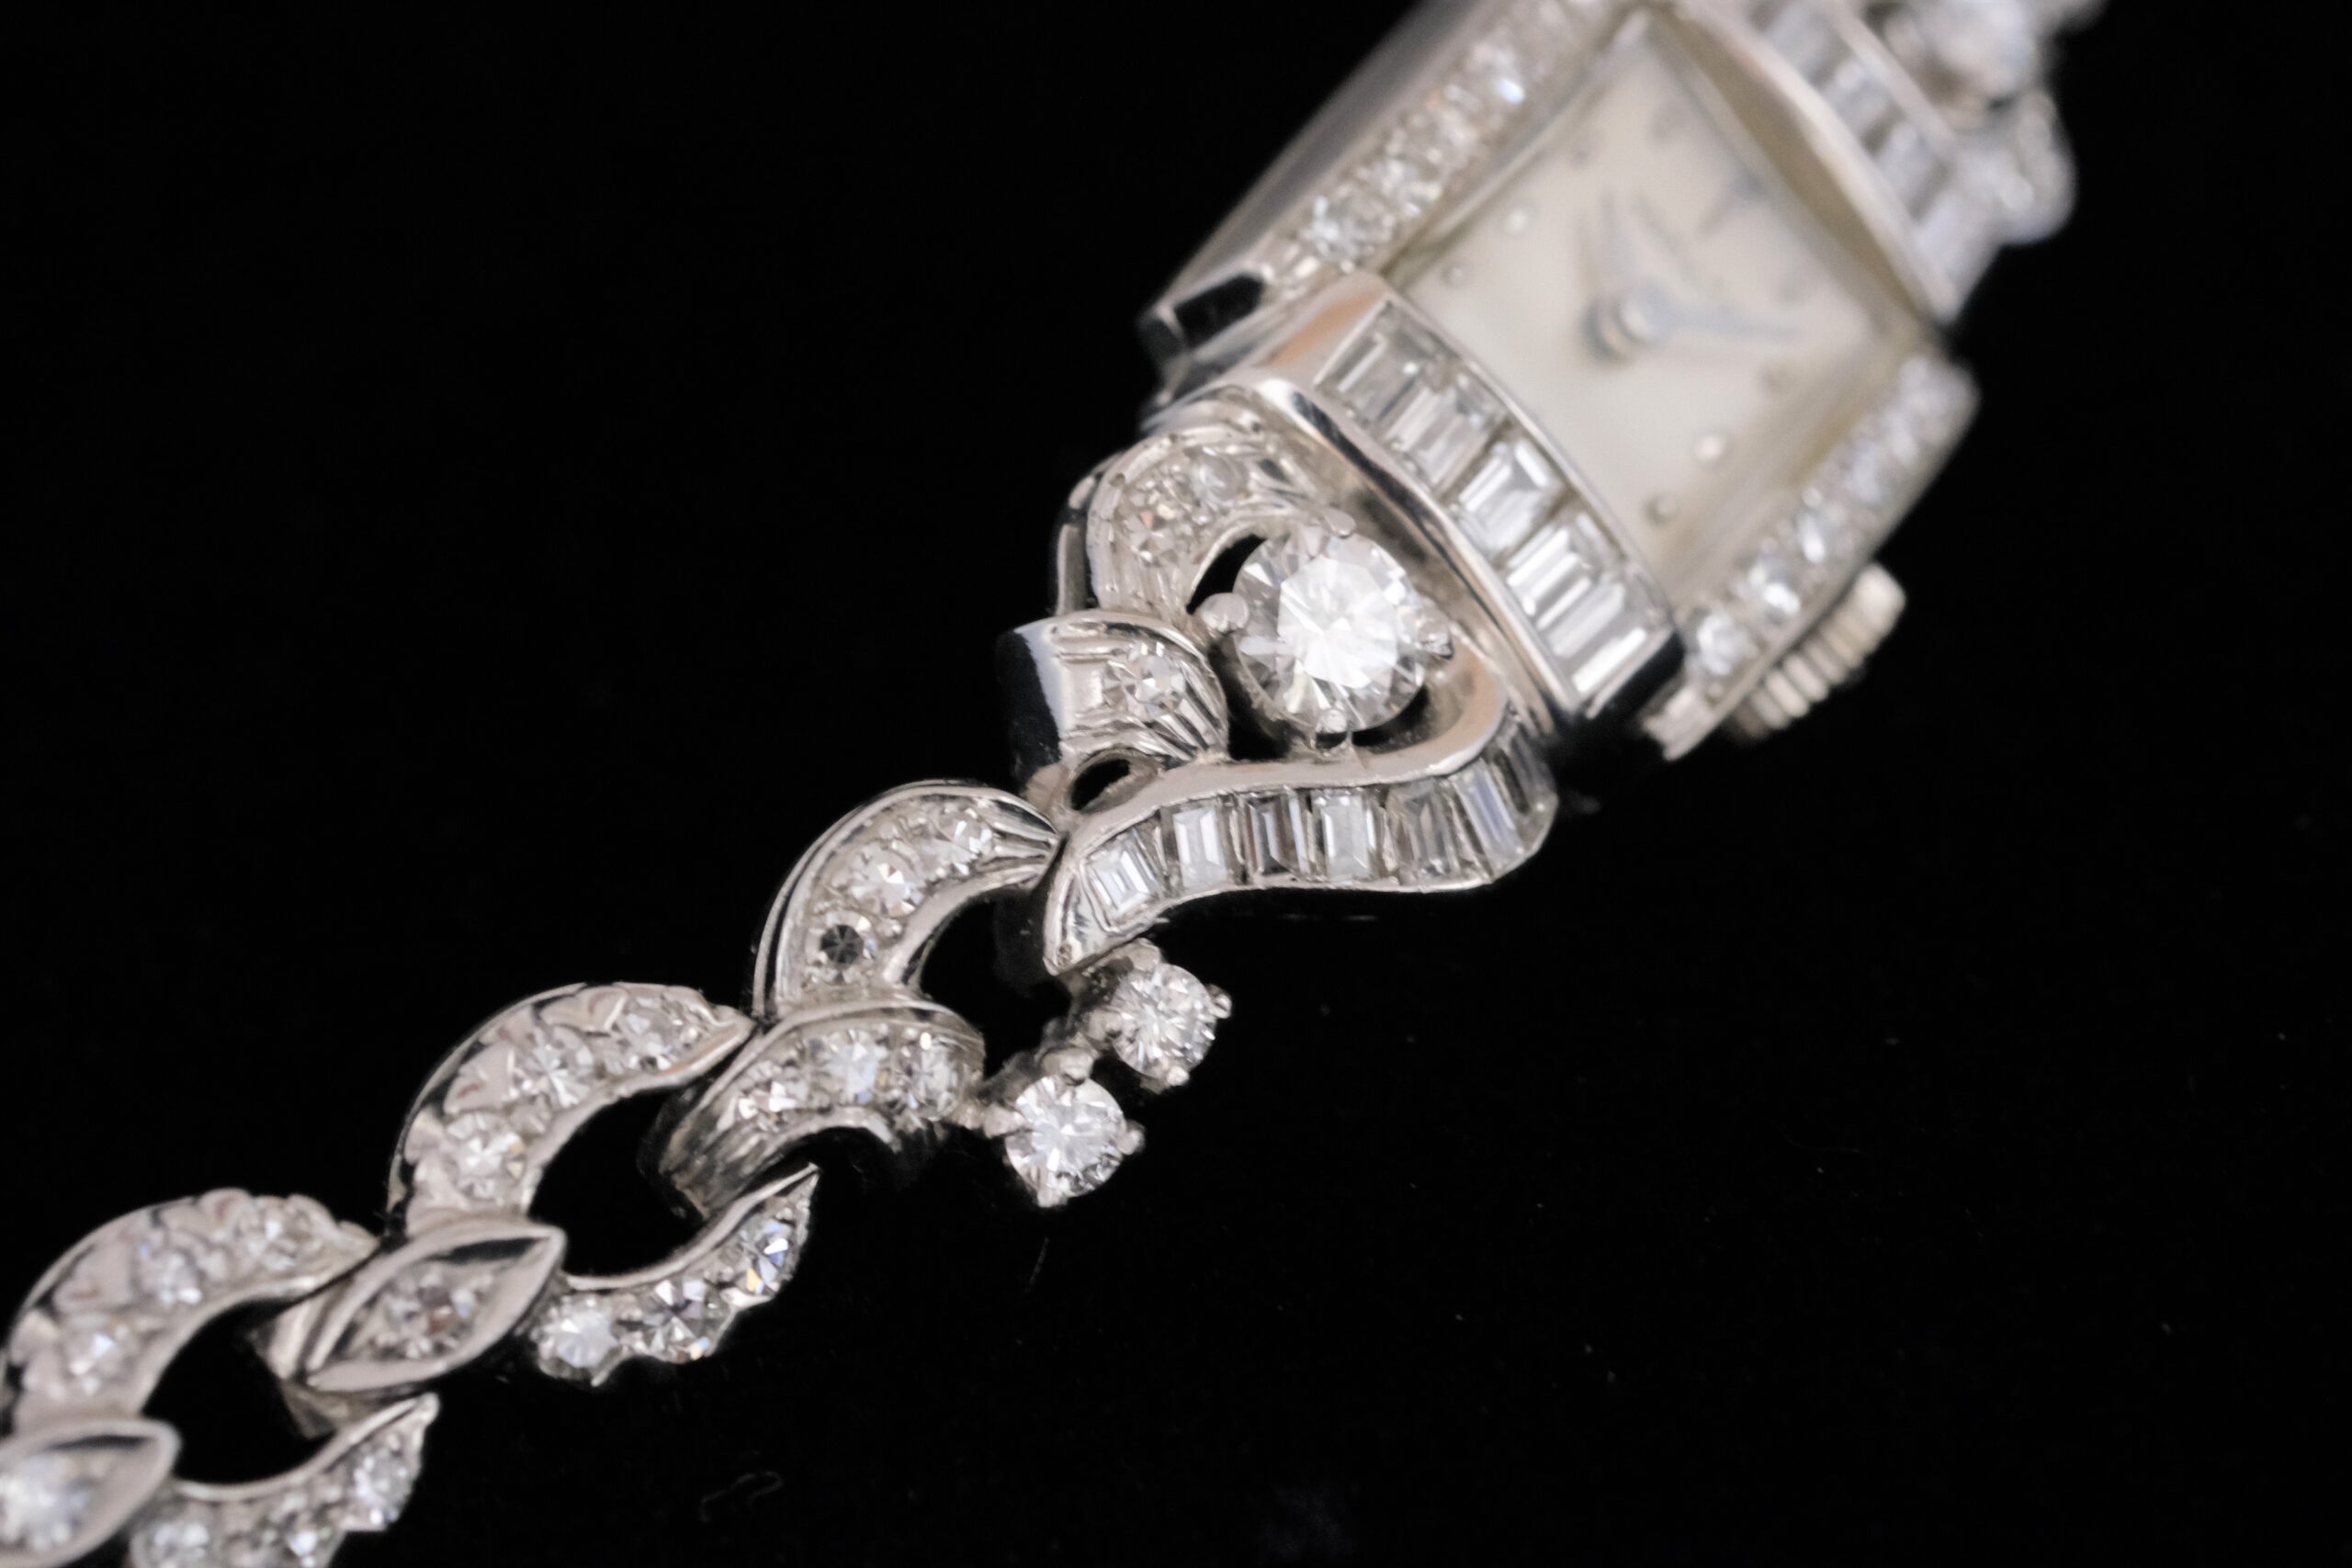 アンティークハミルトンダイヤモンドブレスレット
Antique Hamilton diamondbracelet